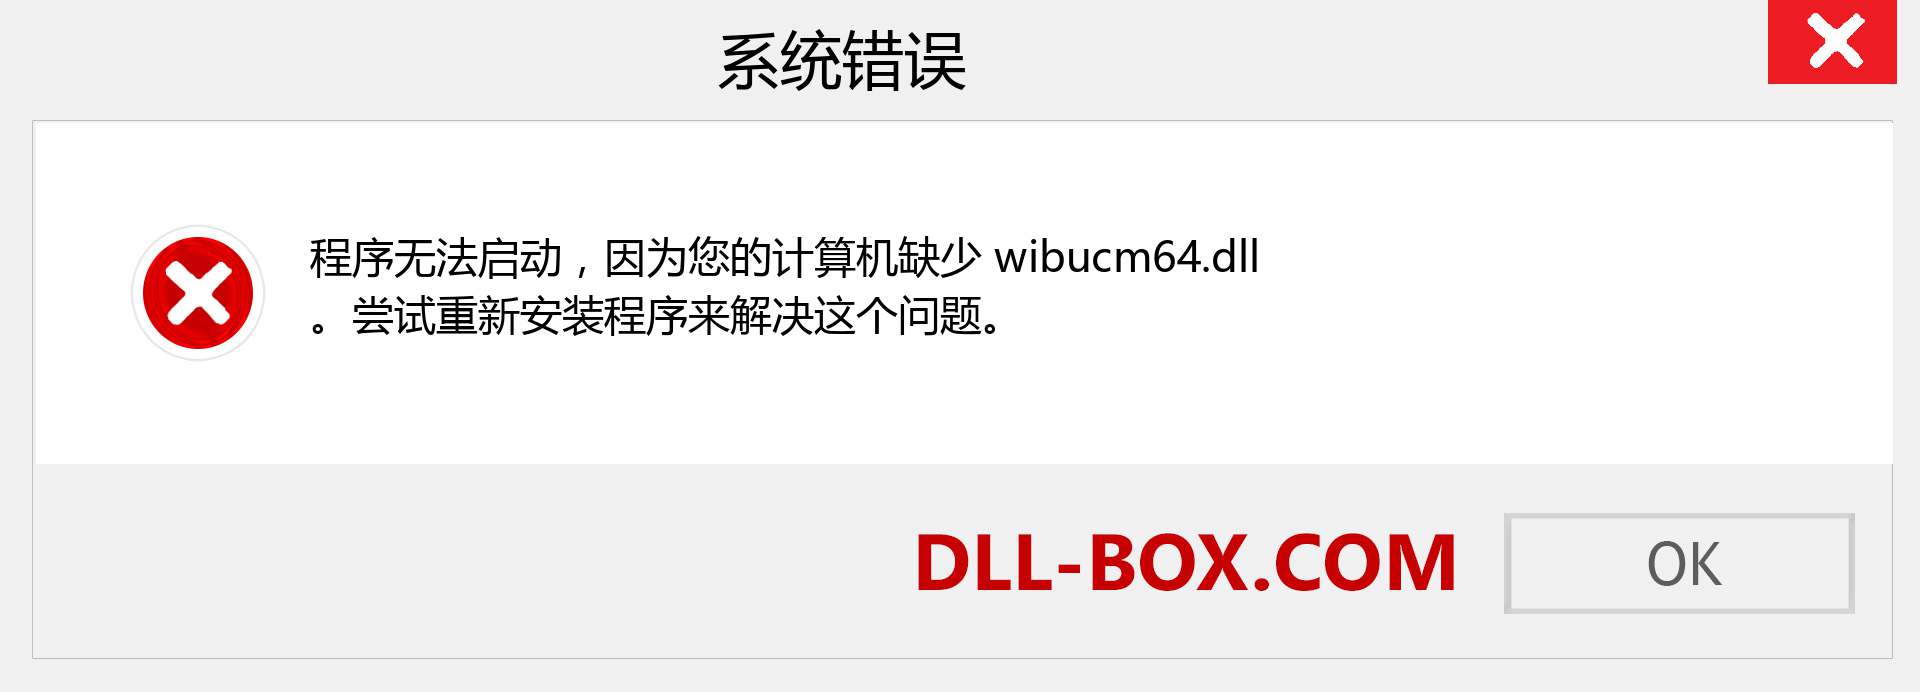 wibucm64.dll 文件丢失？。 适用于 Windows 7、8、10 的下载 - 修复 Windows、照片、图像上的 wibucm64 dll 丢失错误